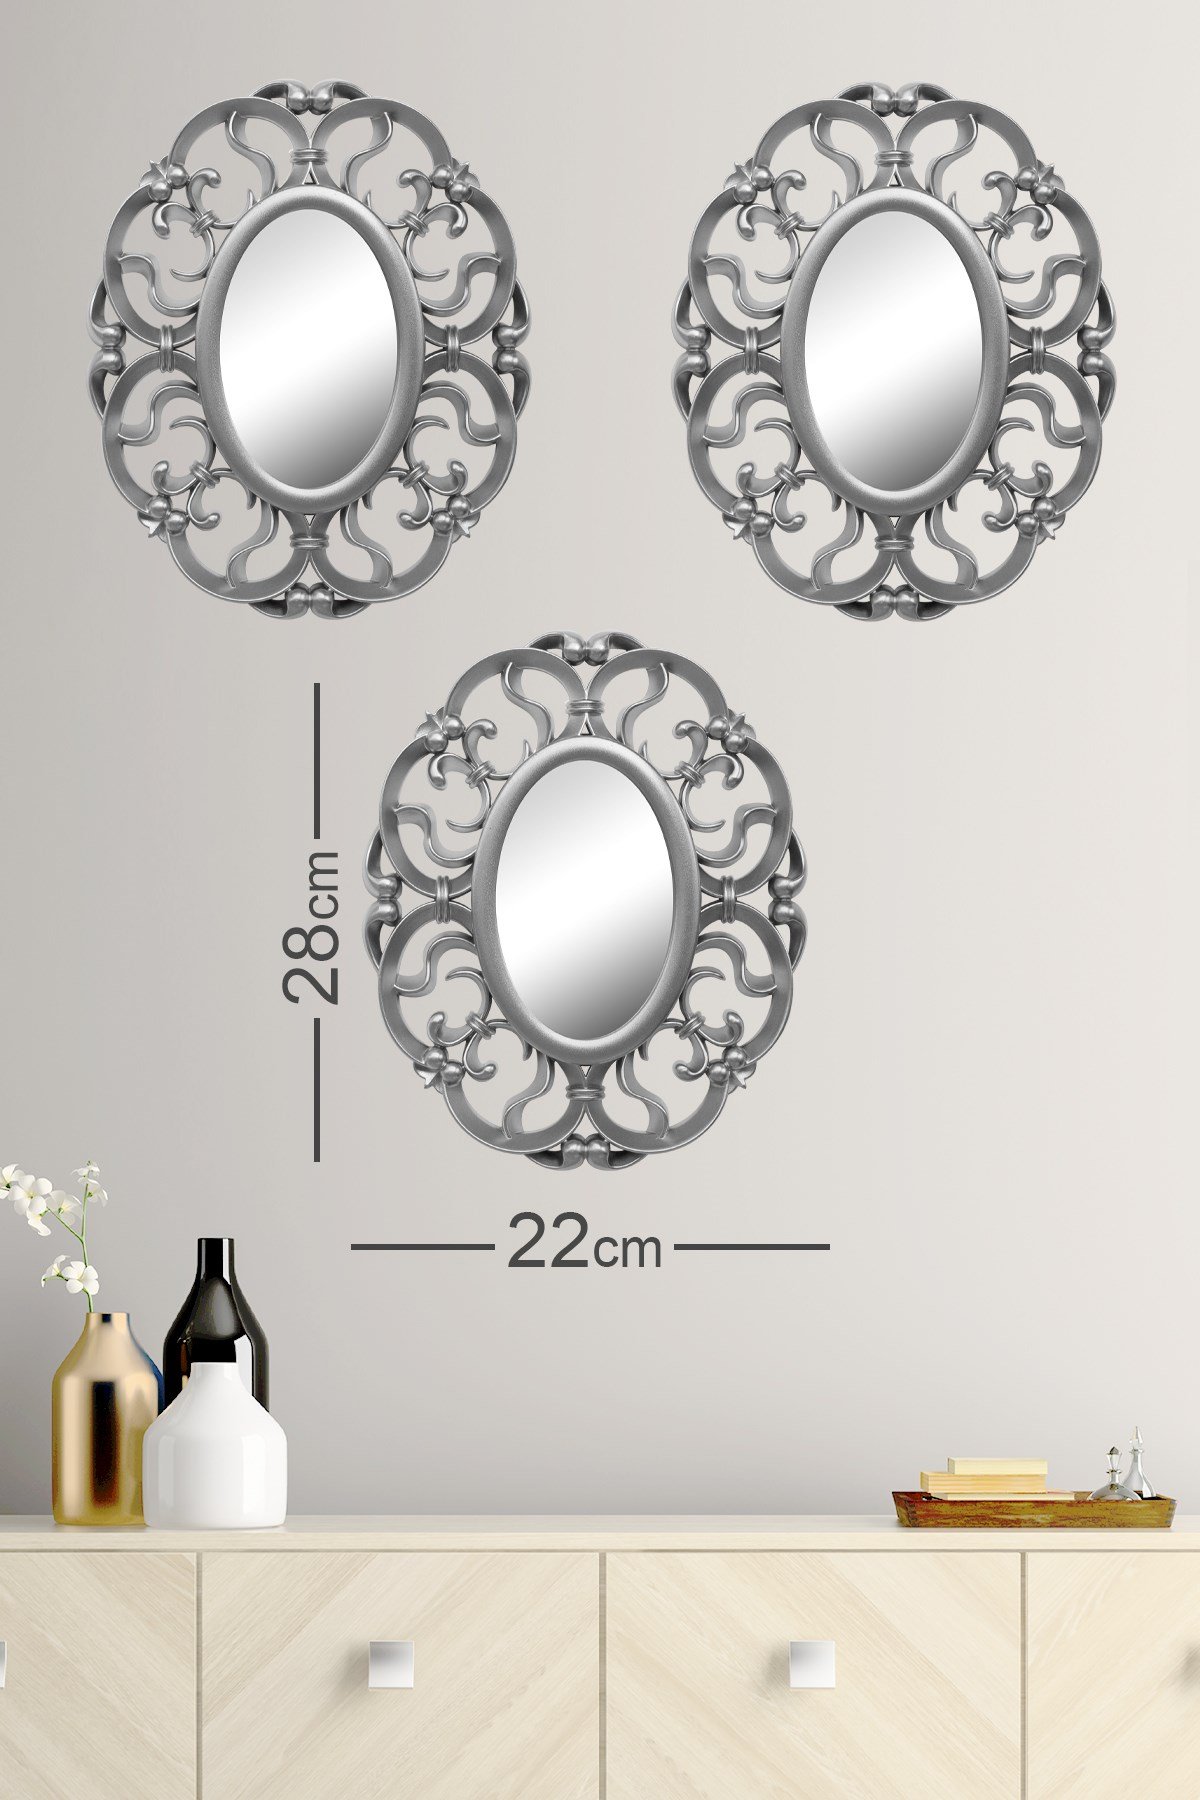 Aynalı Duvar Saatleri Fiyatları ve Daha Birçok Dekoratif Ürün | MuyikaDesign